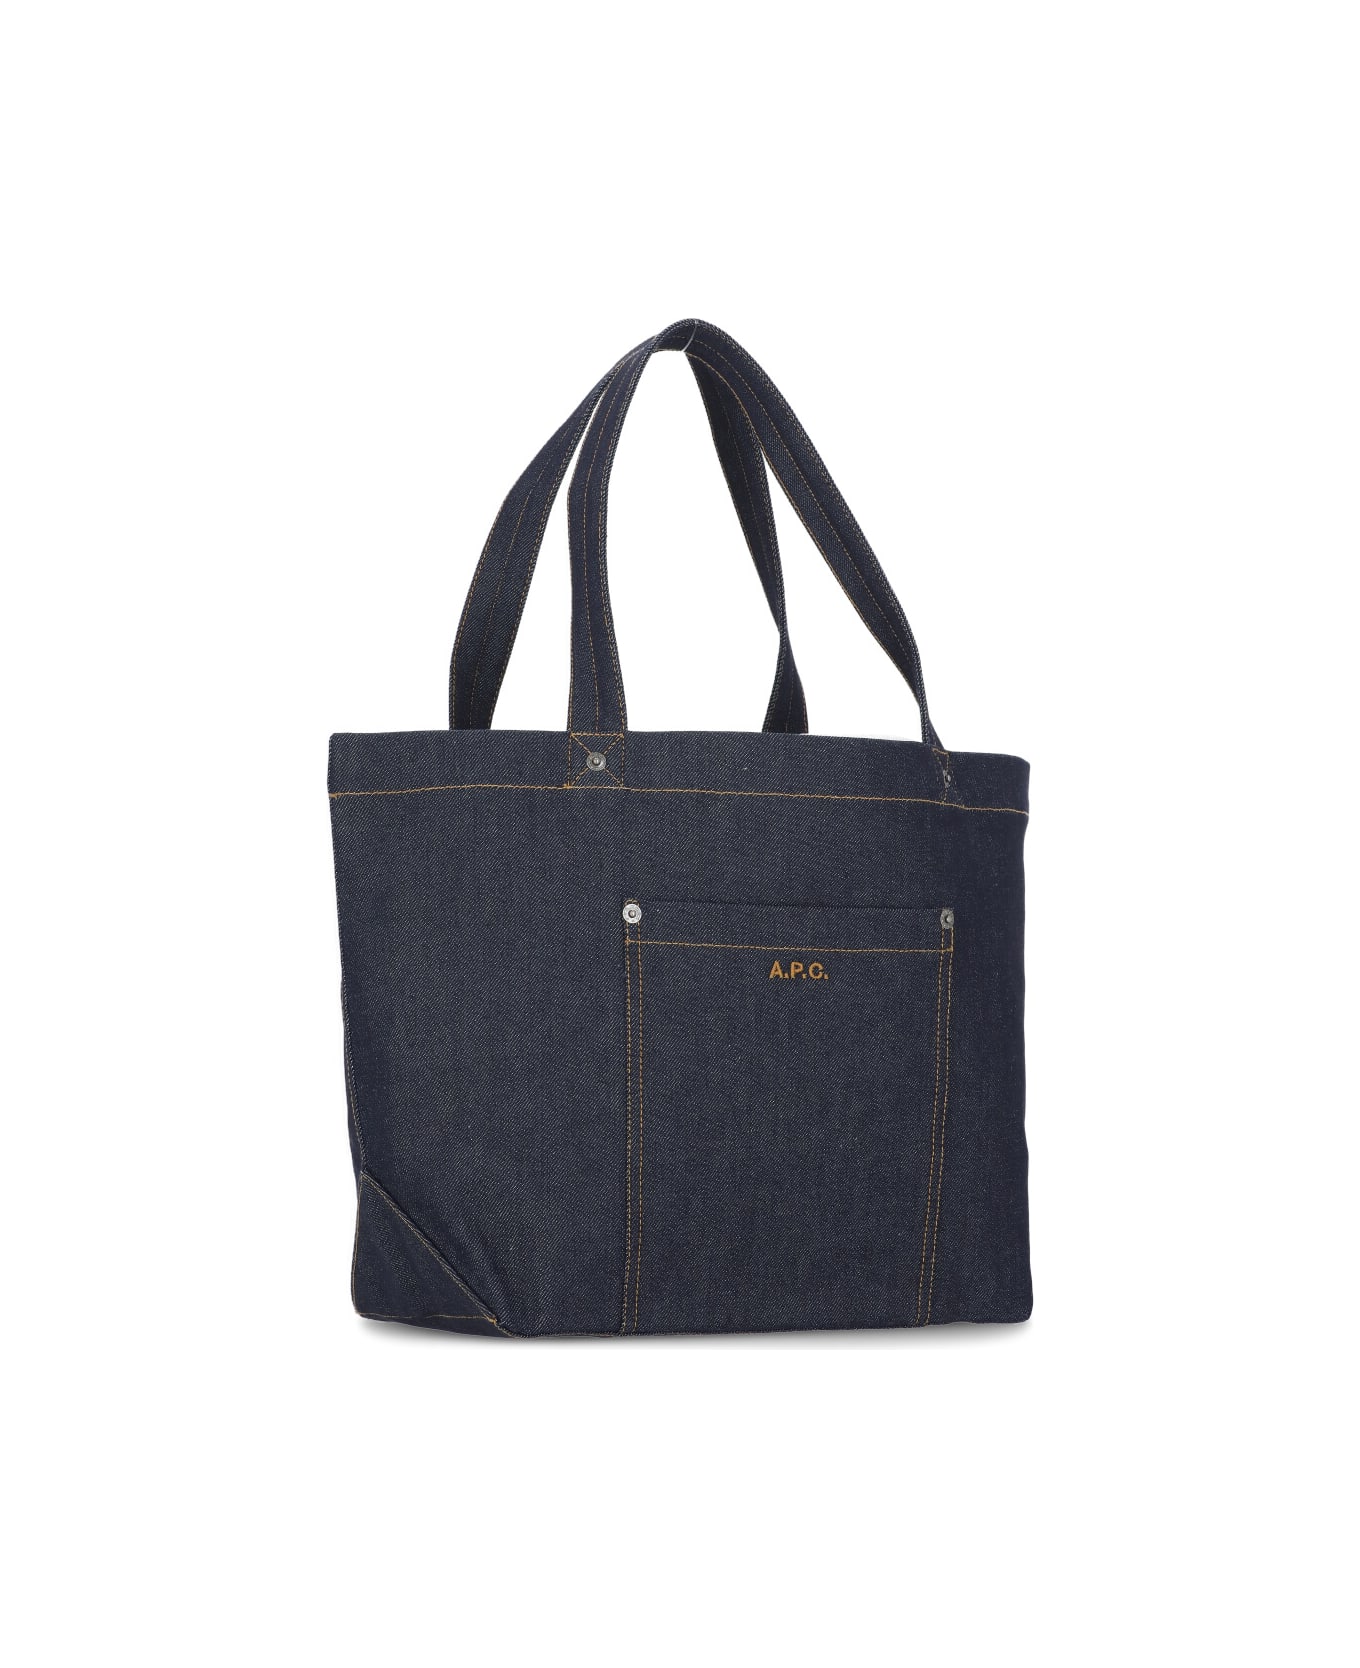 A.P.C. Thiais Shopping Bag - Blue